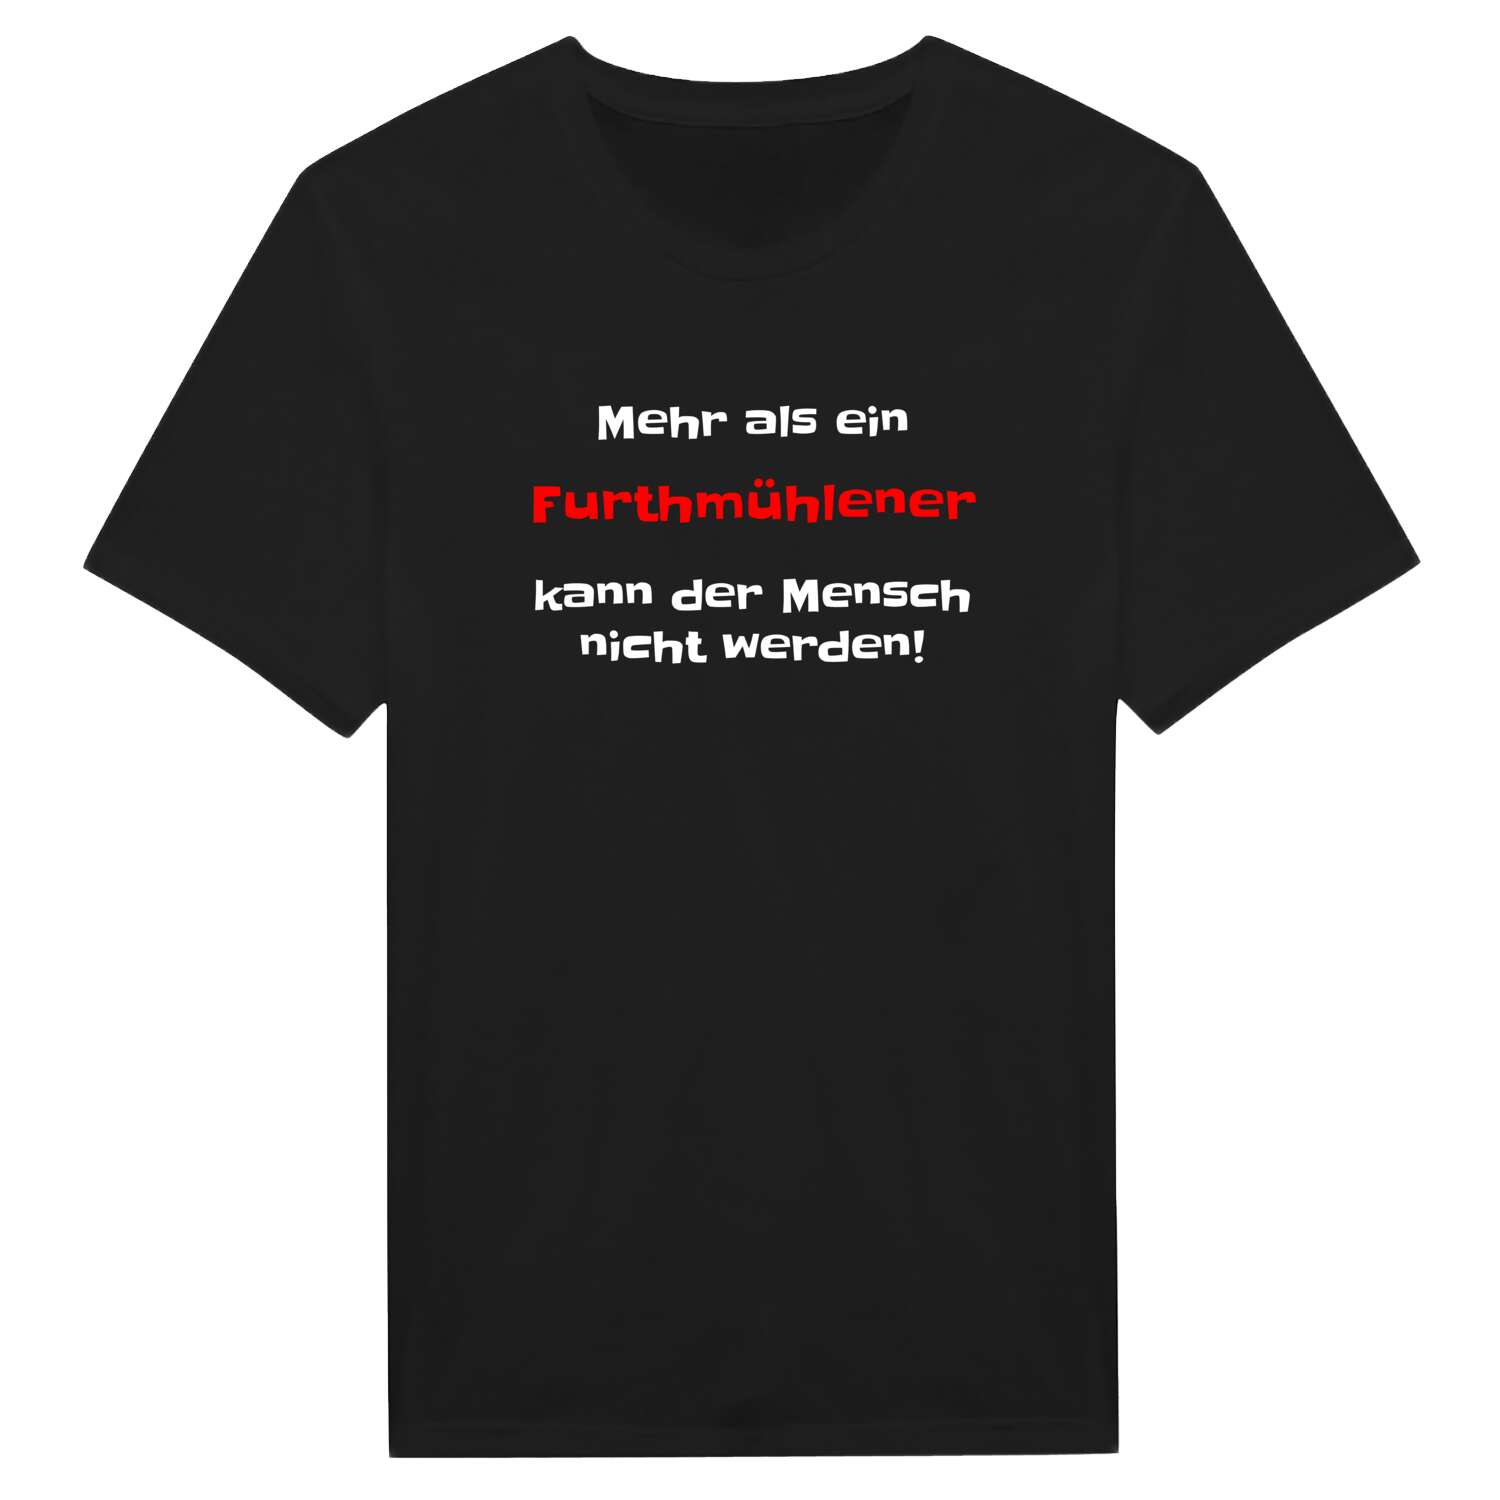 Furthmühle T-Shirt »Mehr als ein«